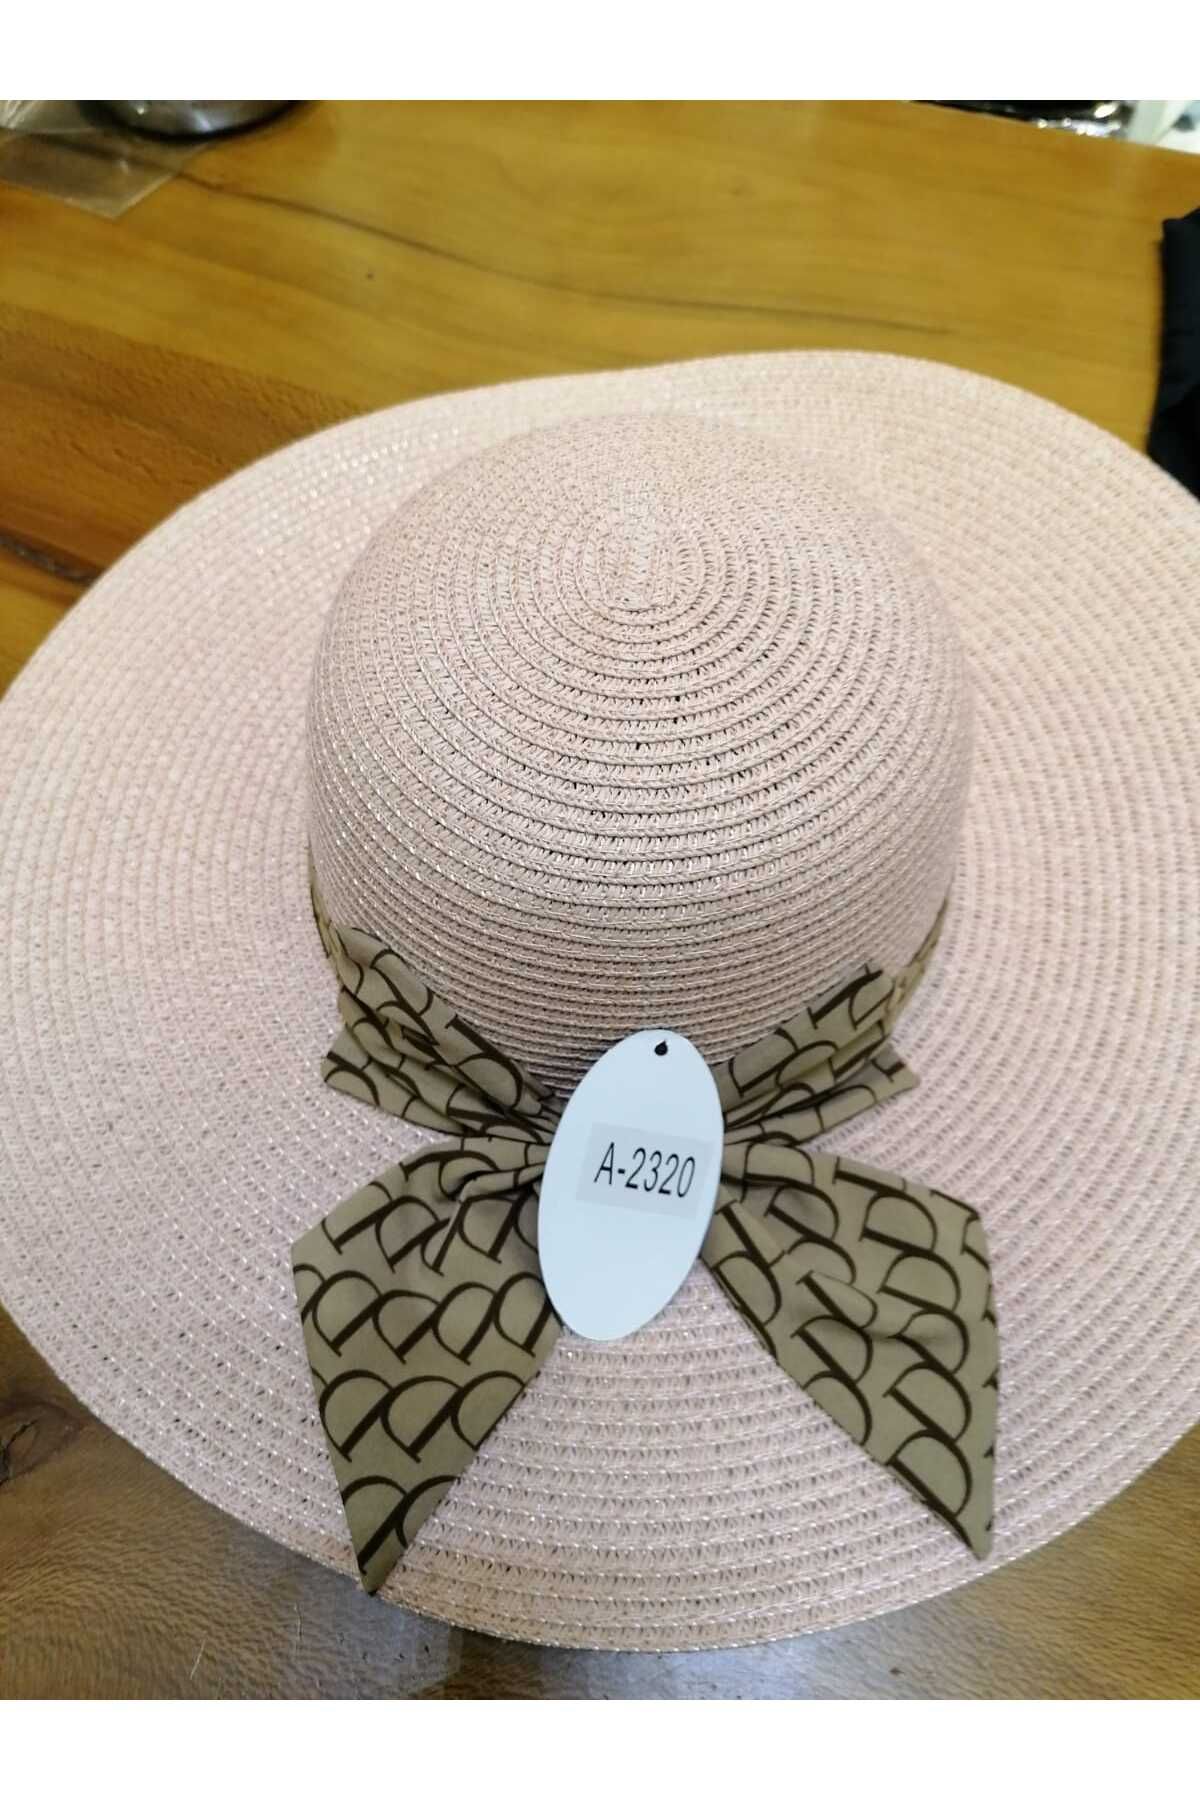 LULO Kadın Hasir Şık Tarz Trend Kaliteli Lüks Şapka Özel Koleksiyon